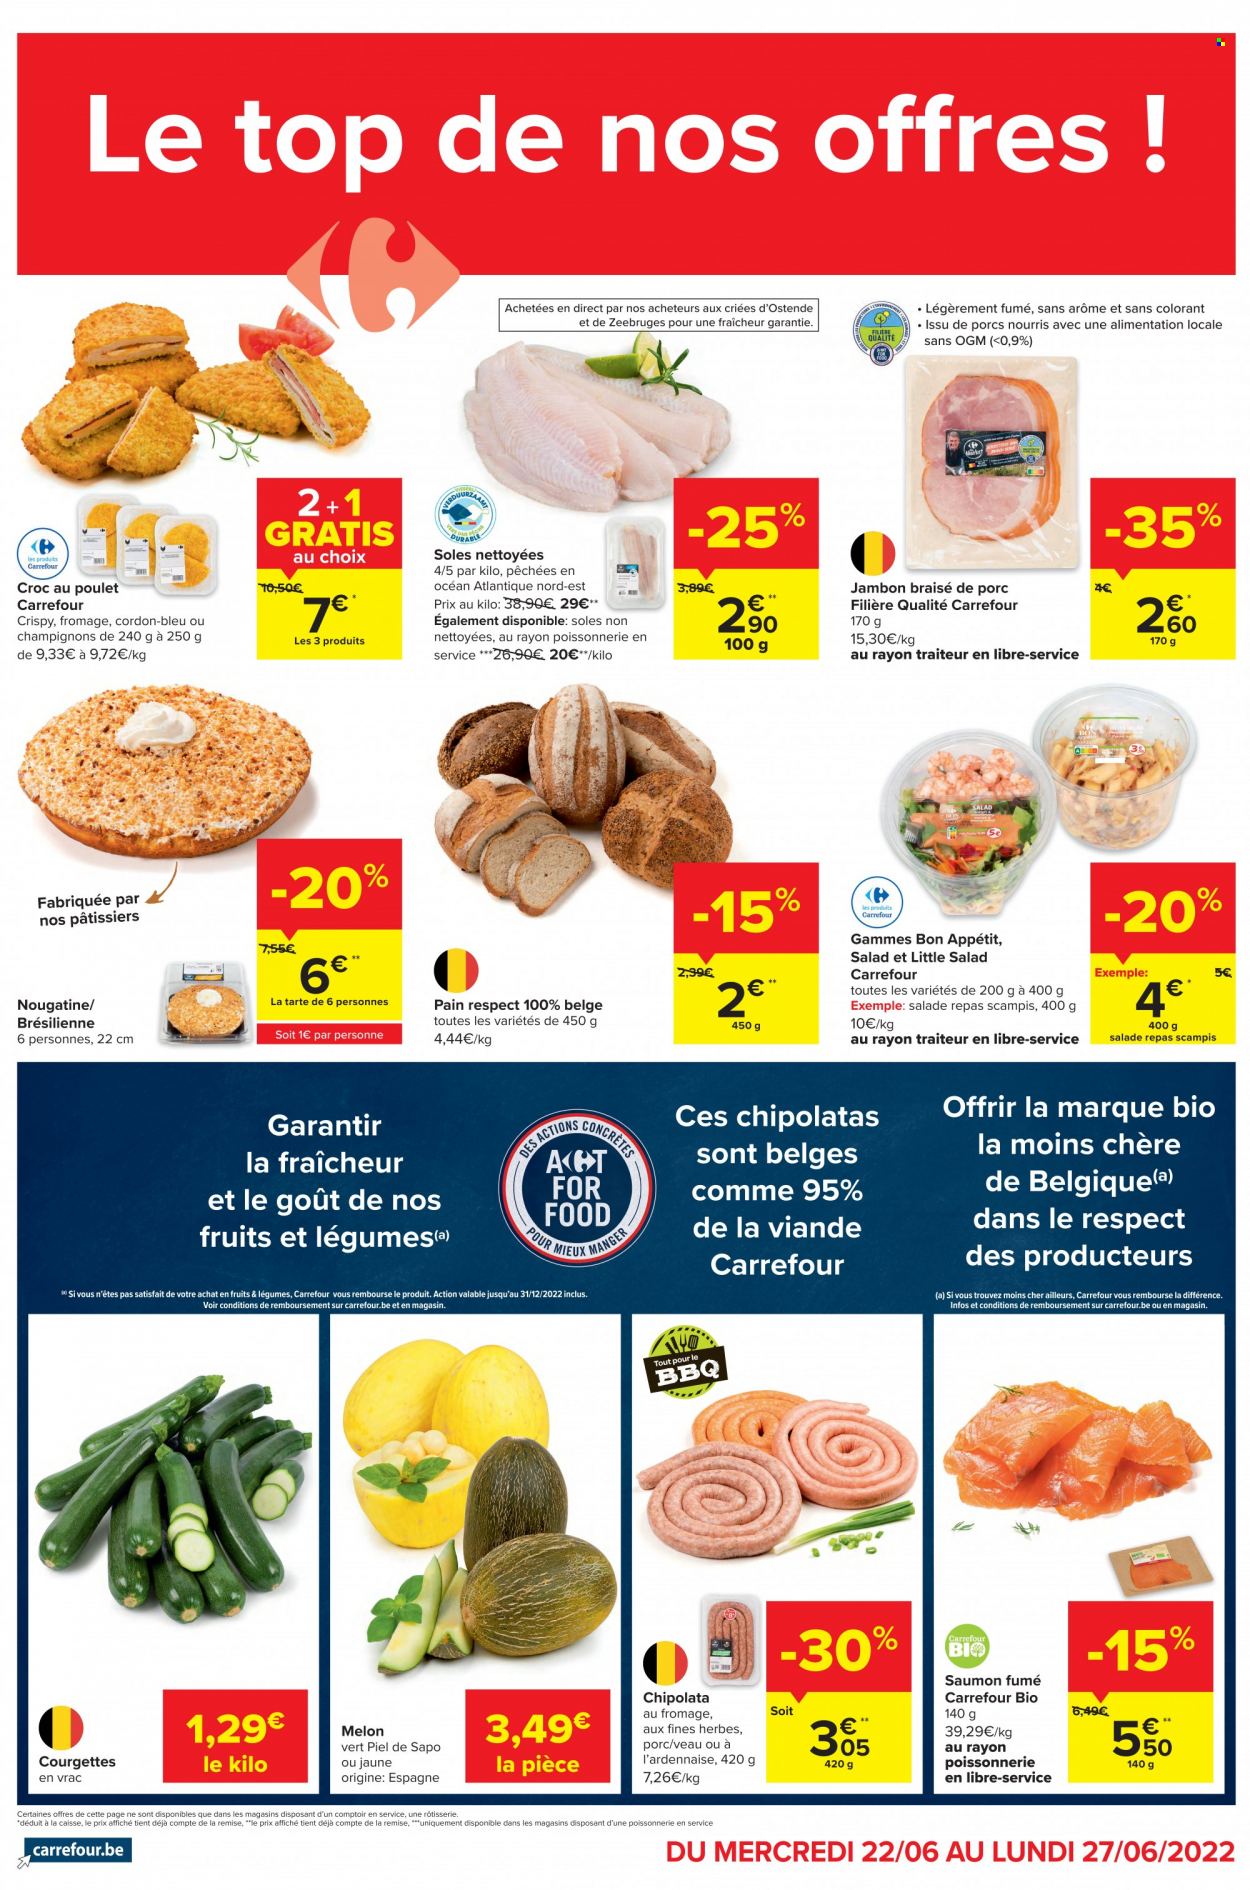 thumbnail - Catalogue Carrefour - 22/06/2022 - 27/06/2022 - Produits soldés - salade, courgette, melon, tarte, pain, viande de veau, chipolata, saumon fumé. Page 2.